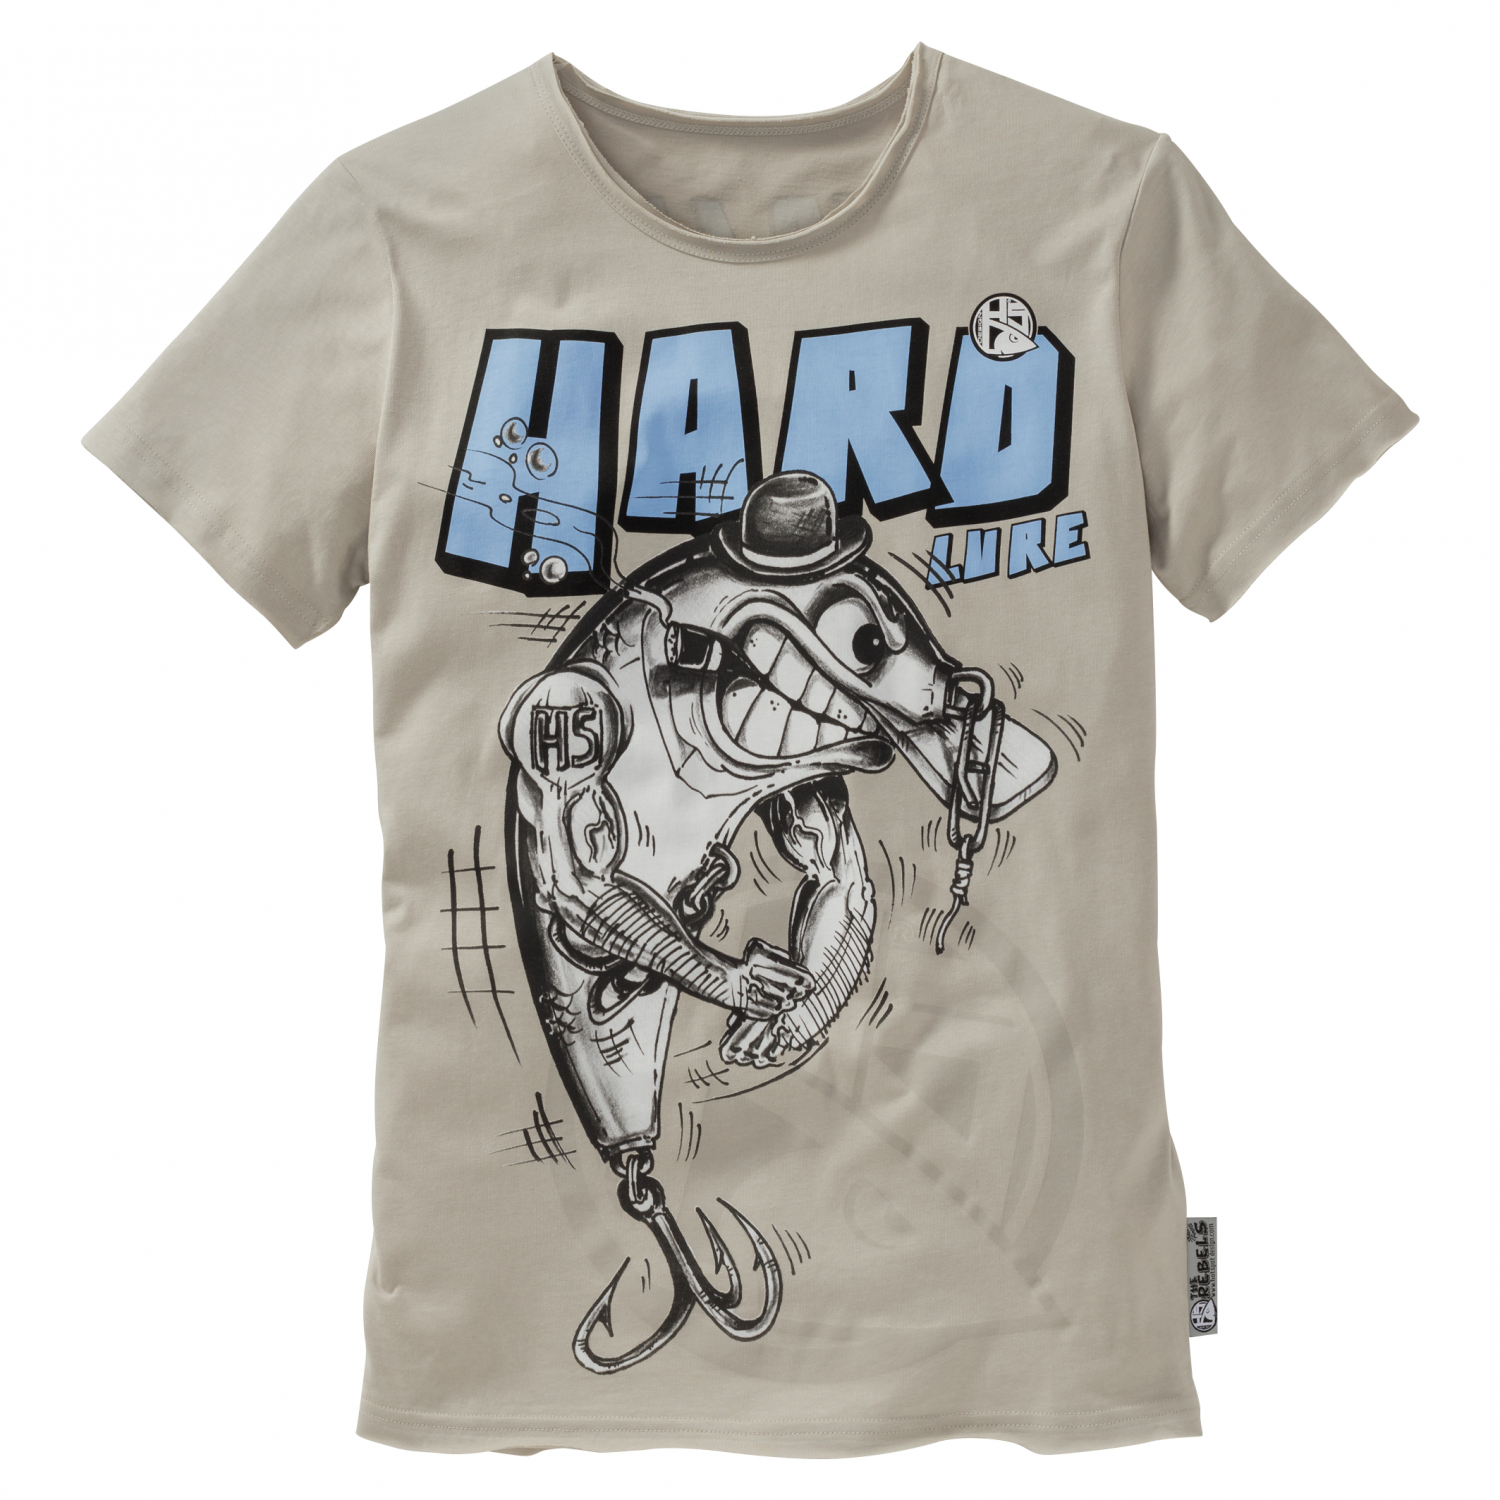 Hotspot Men's Hotspot T-Shirt The Rebels - Hard lure 